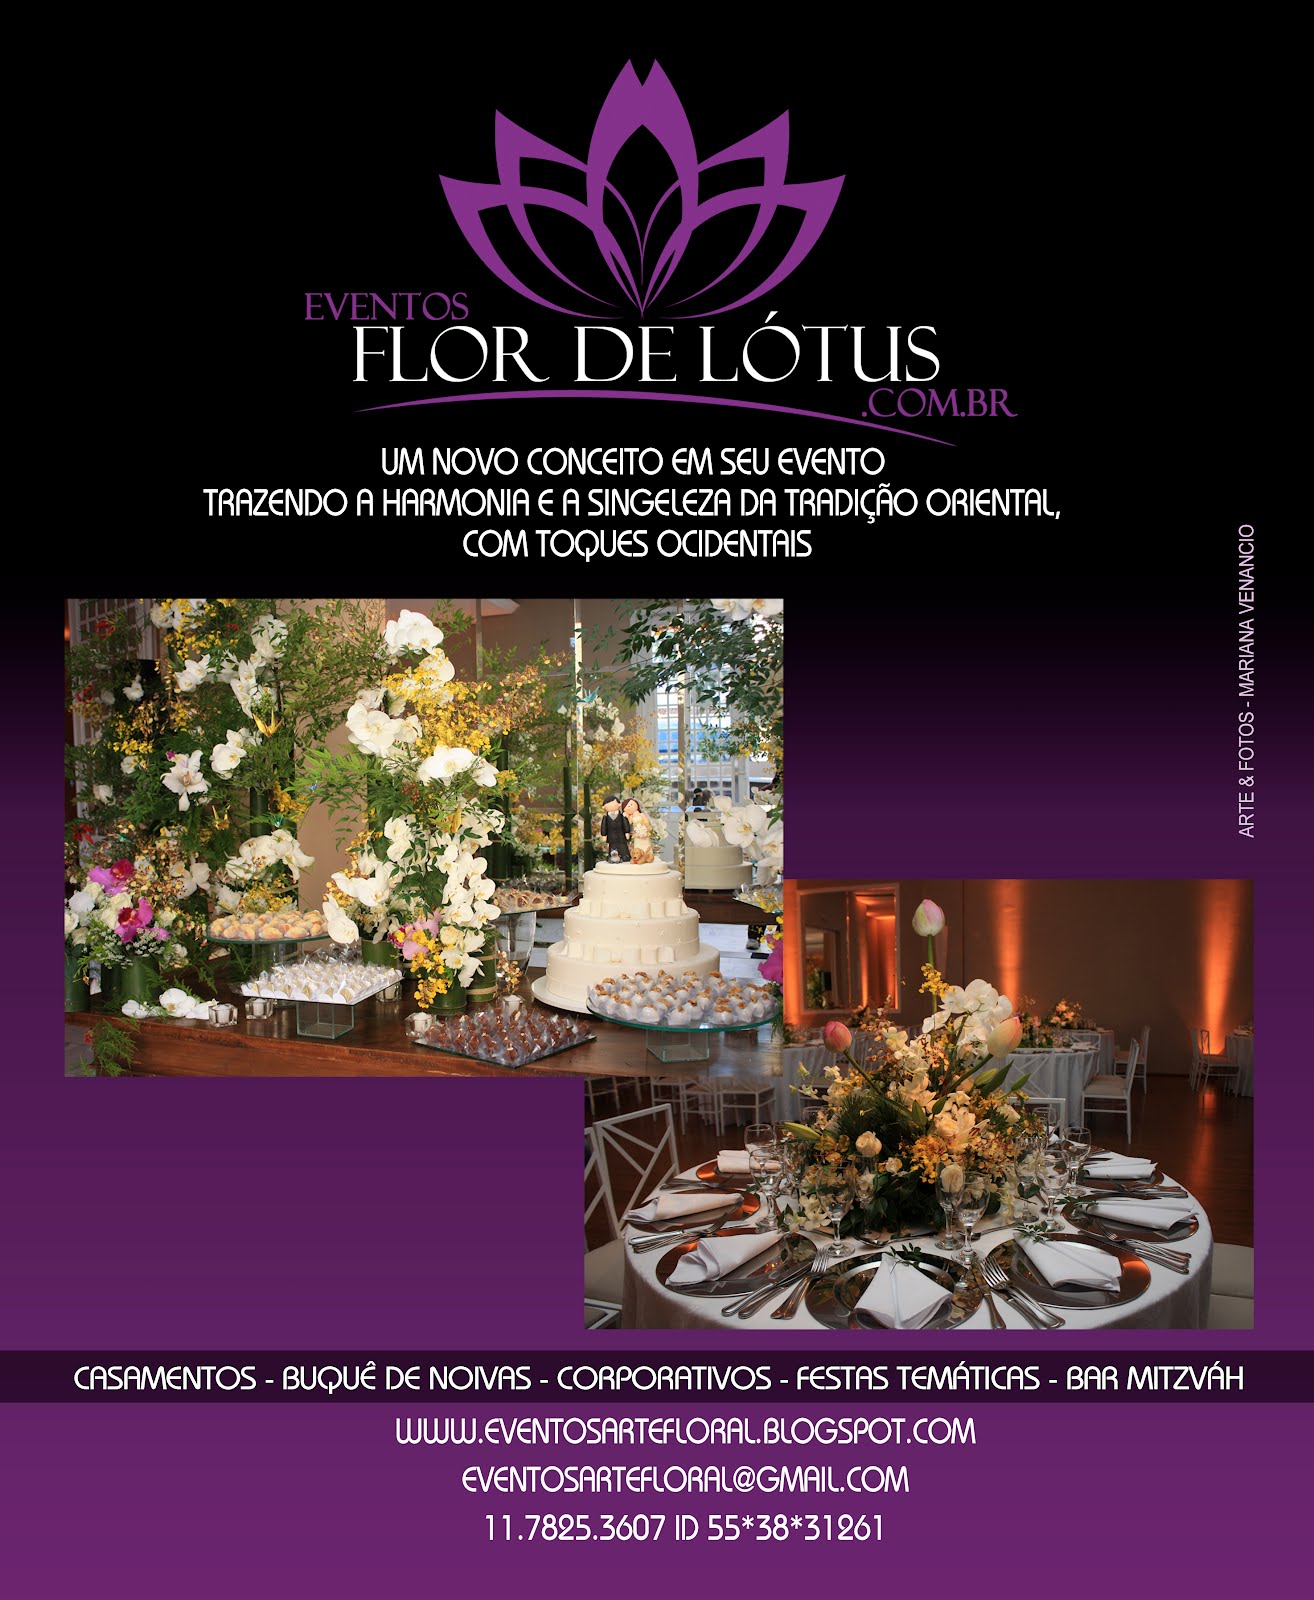 Eventos Flor de Lotus.